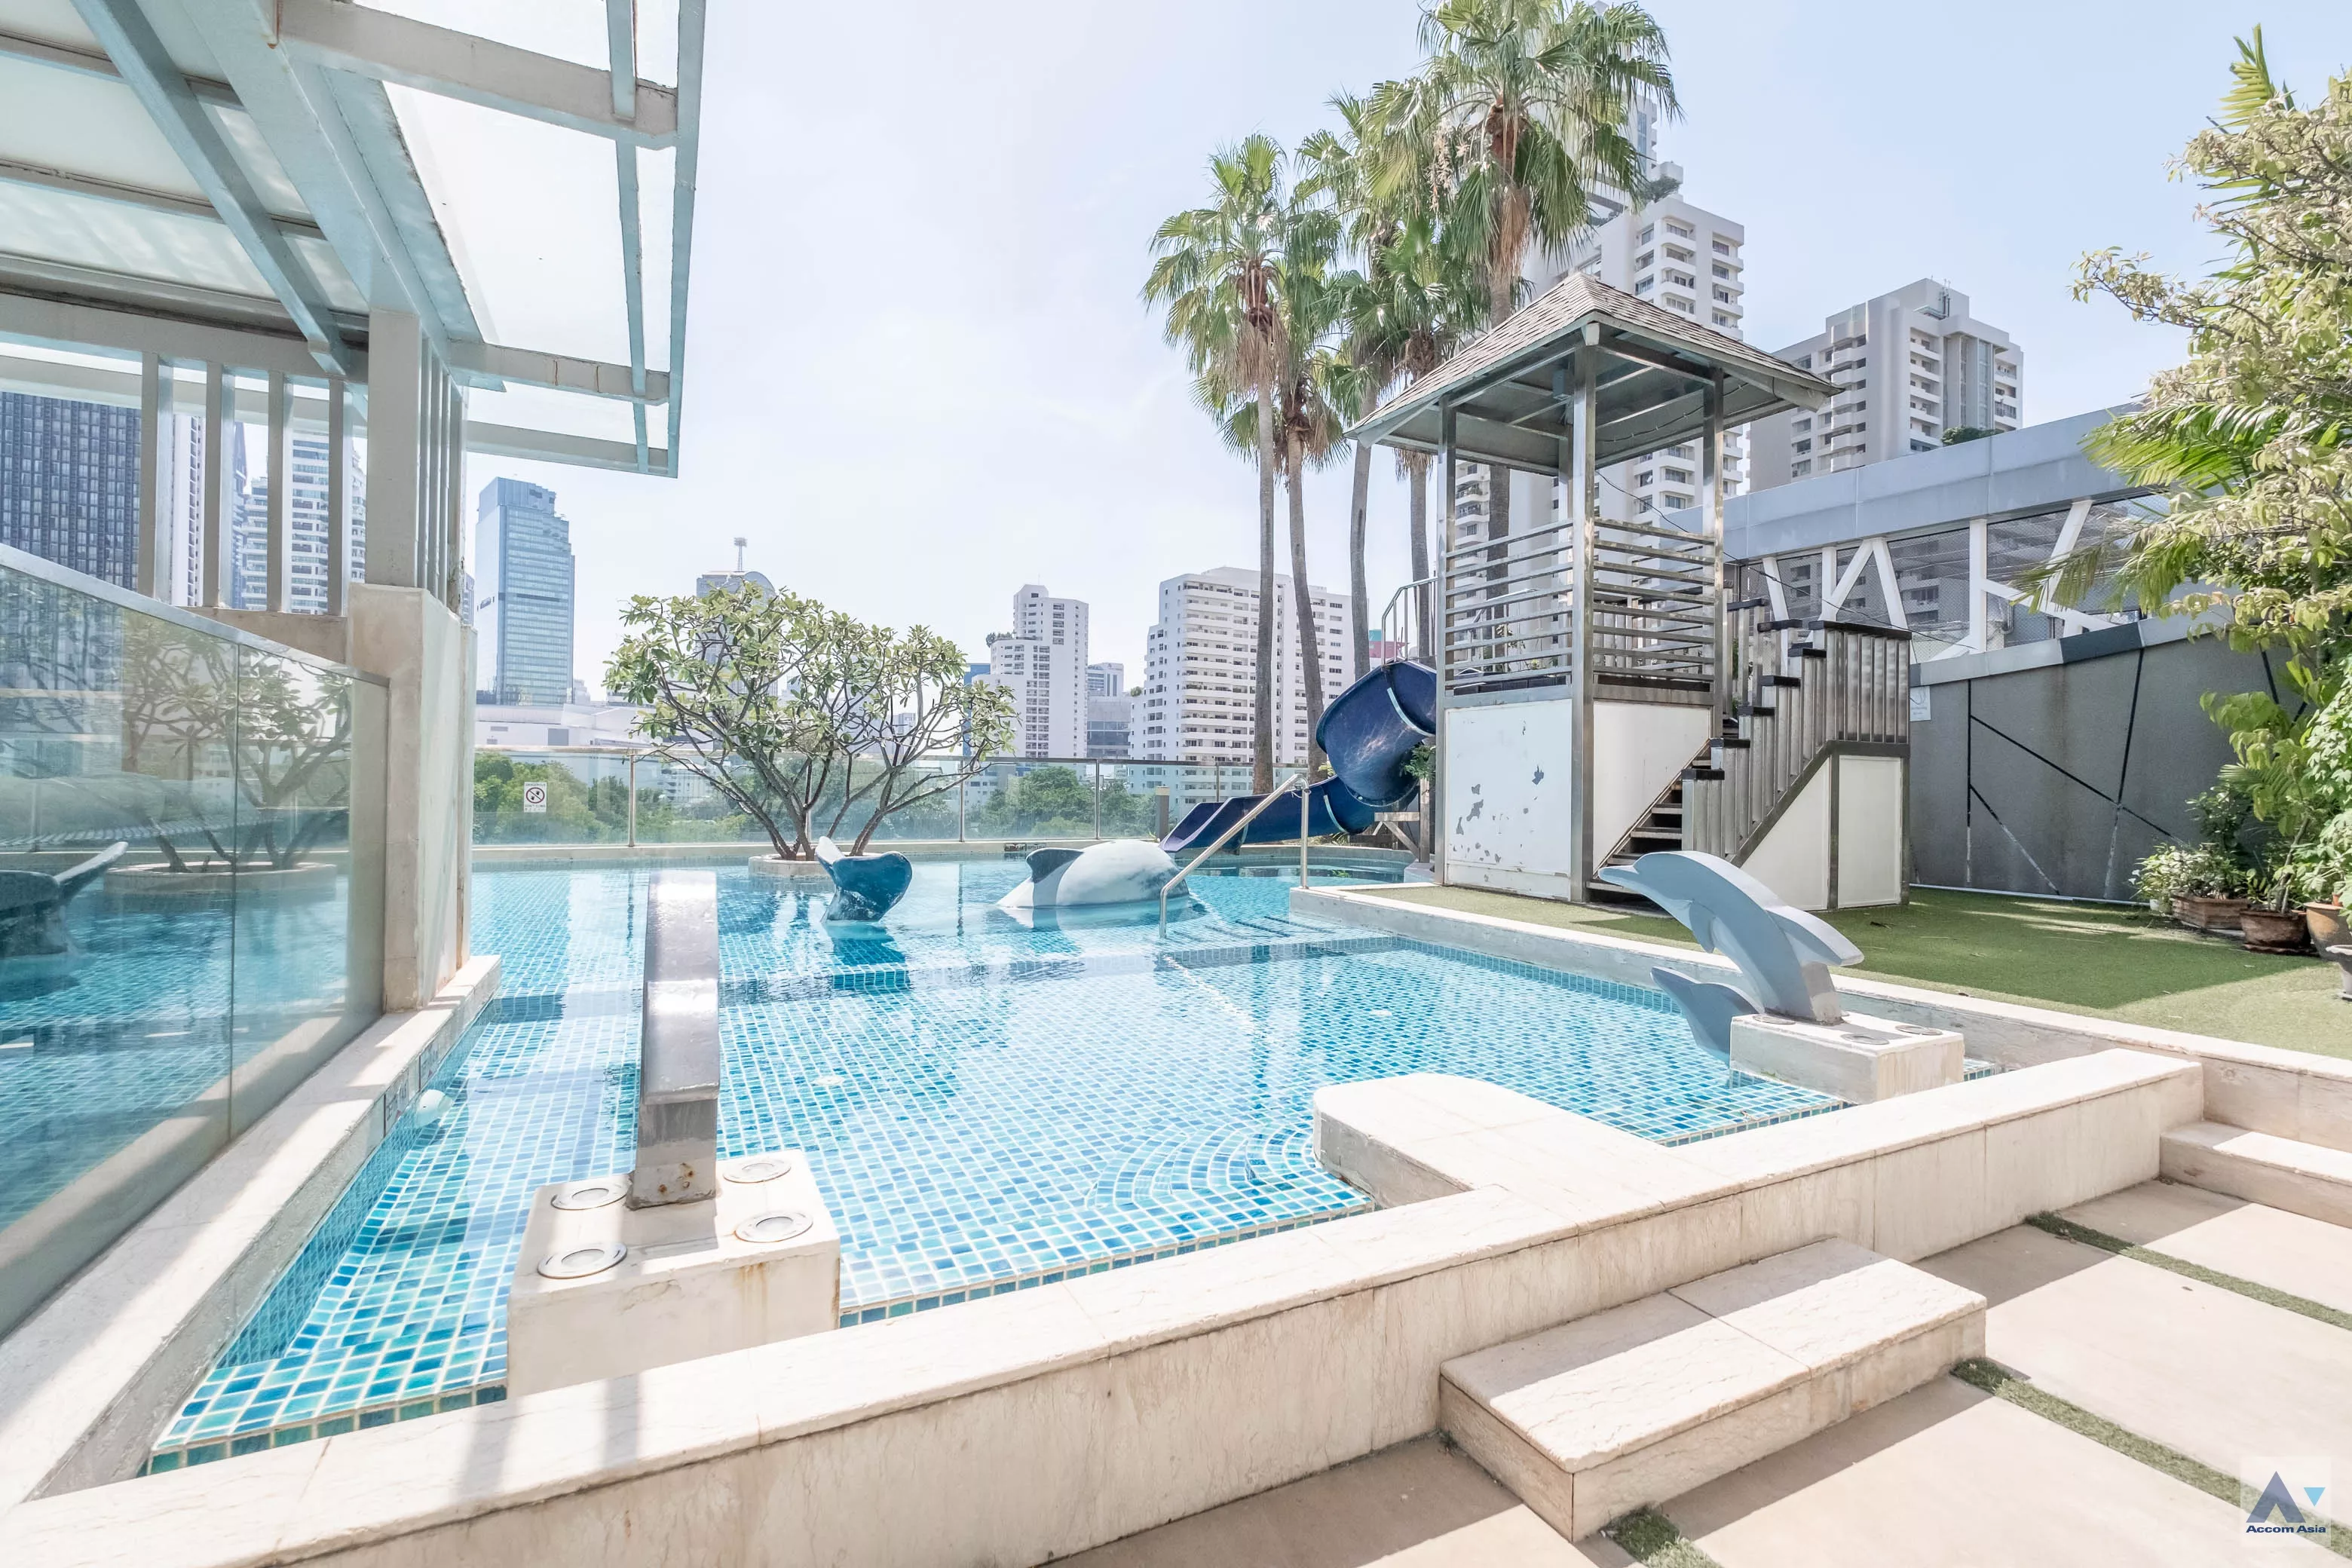  1 The Elegantly Residence - Apartment - Sukhumvit - Bangkok / Accomasia